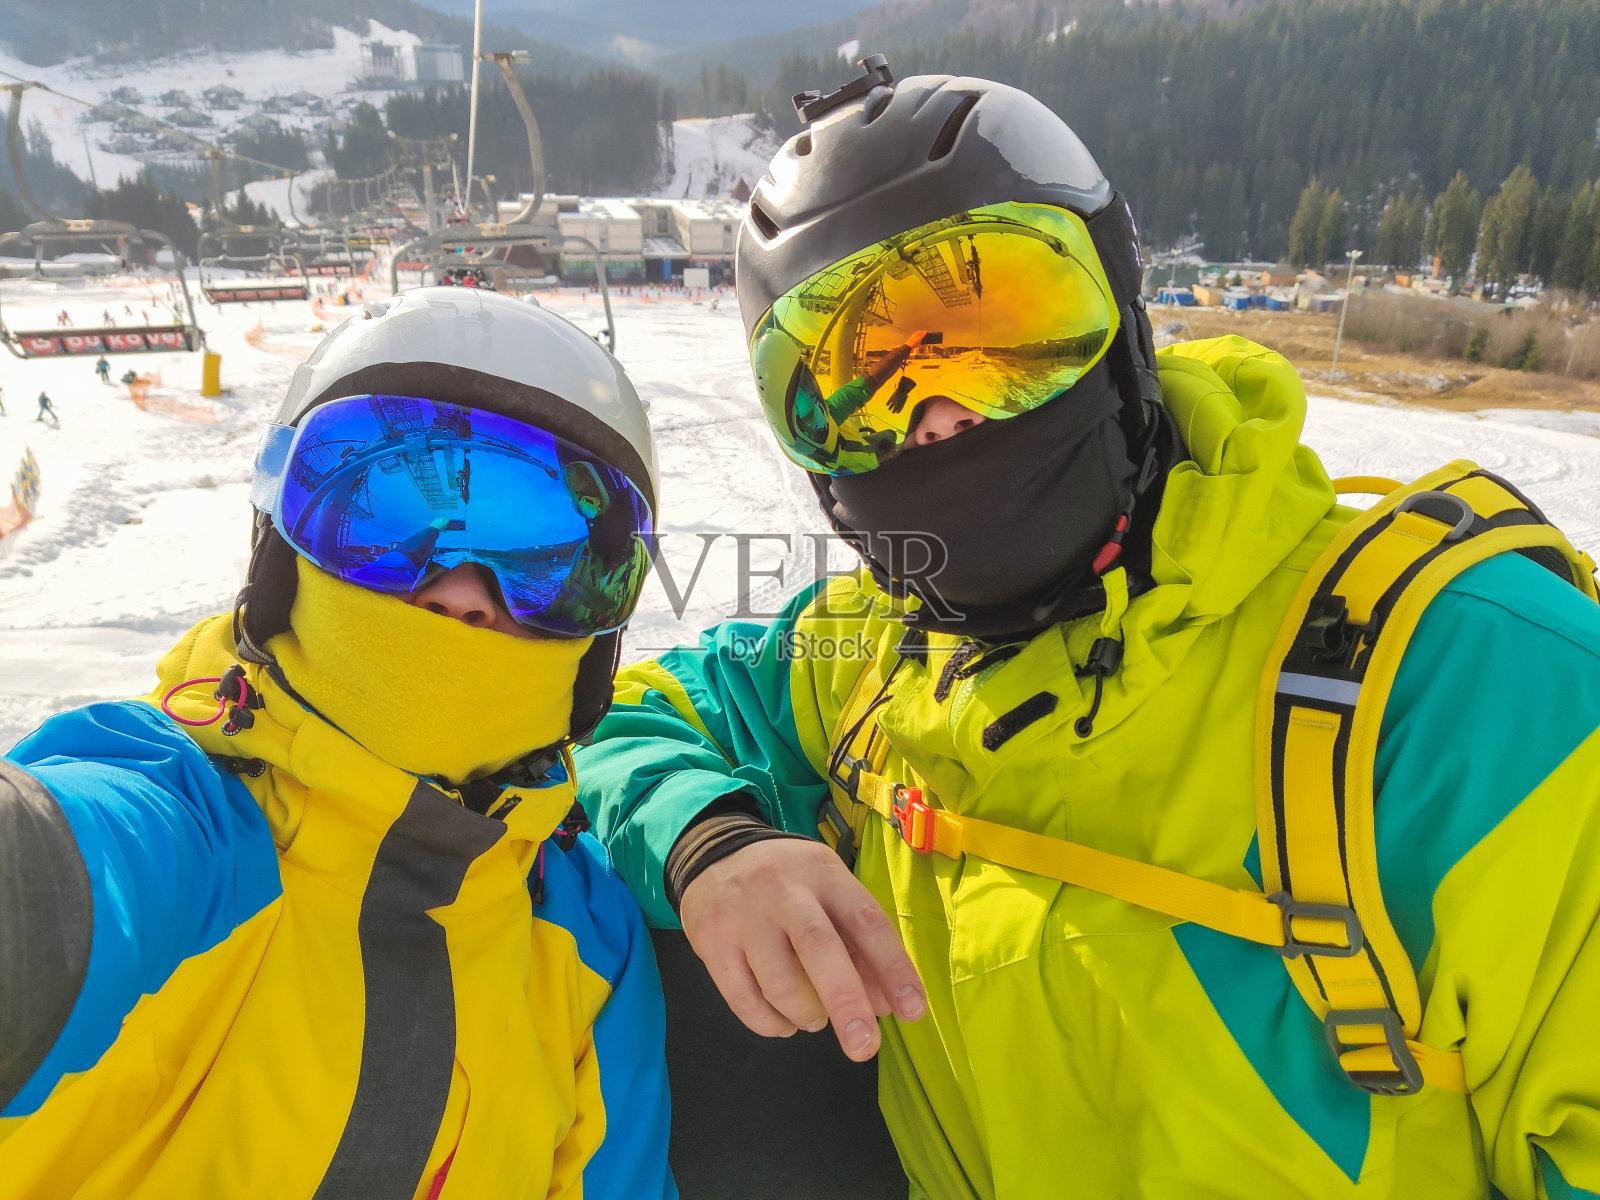 一对夫妇在滑雪胜地的自拍照片摄影图片